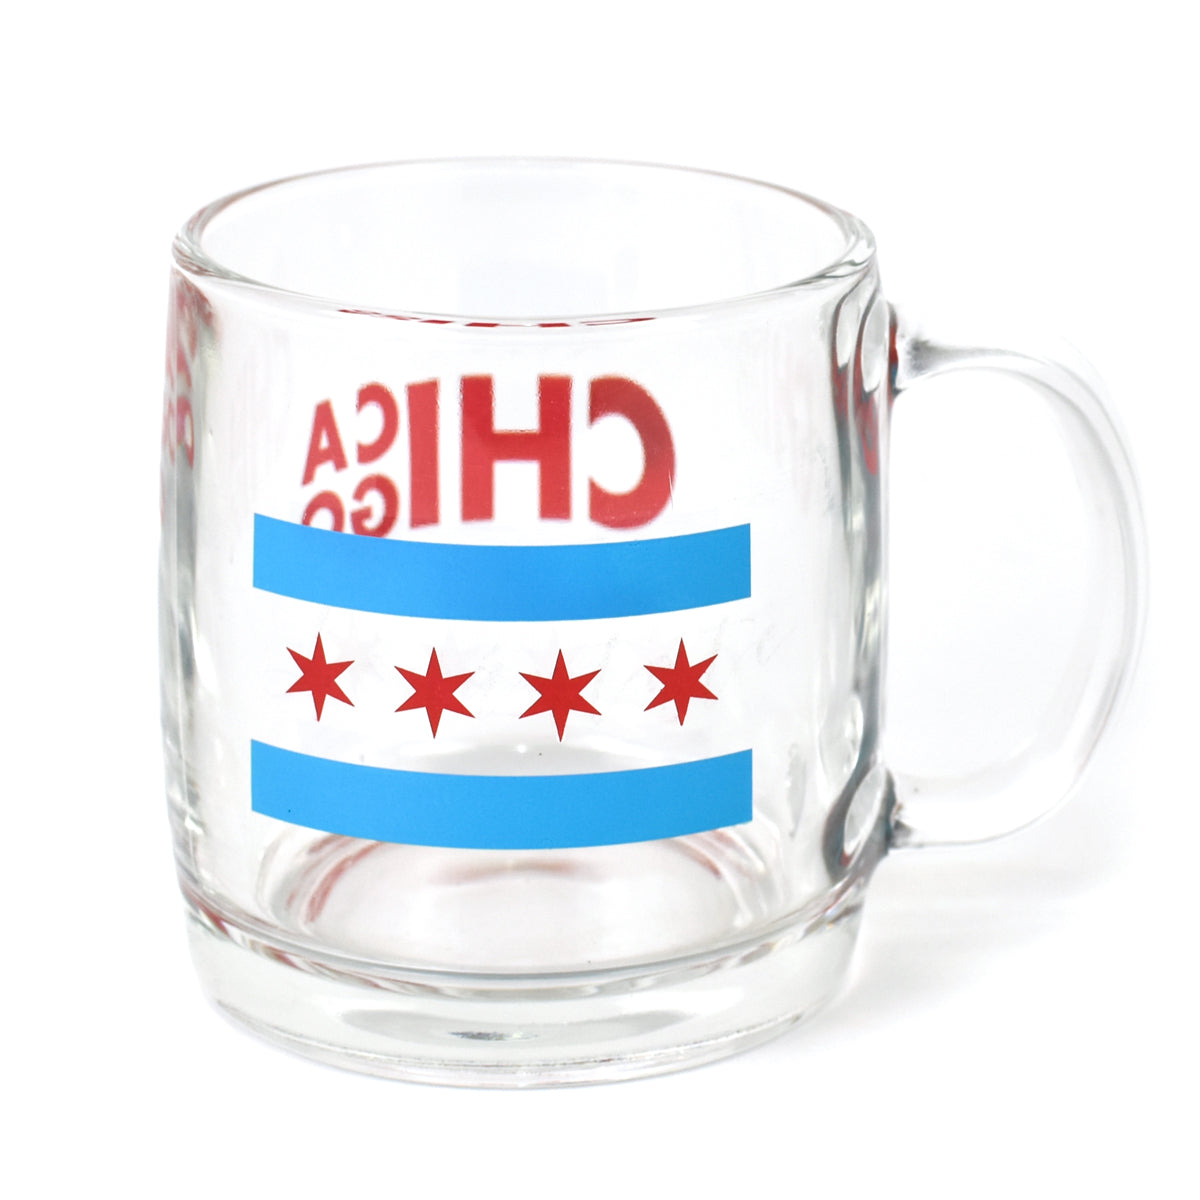 Chicago Flag Glass Mug